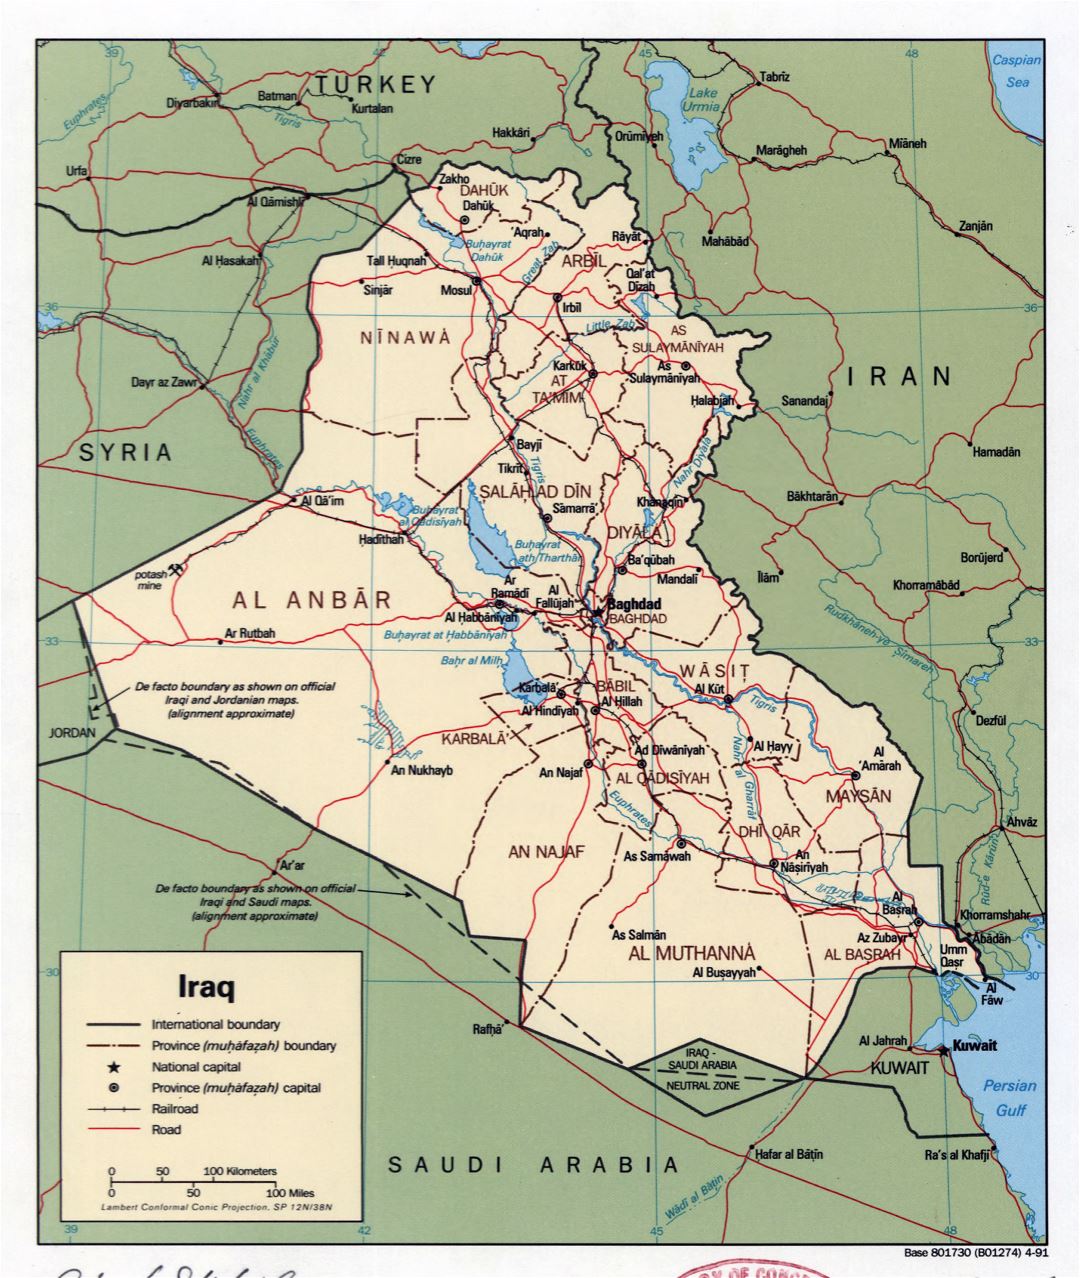 Grande detallado mapa político y administrativo de Iraq con carreteras, ferrocarriles y principales ciudades - 1991